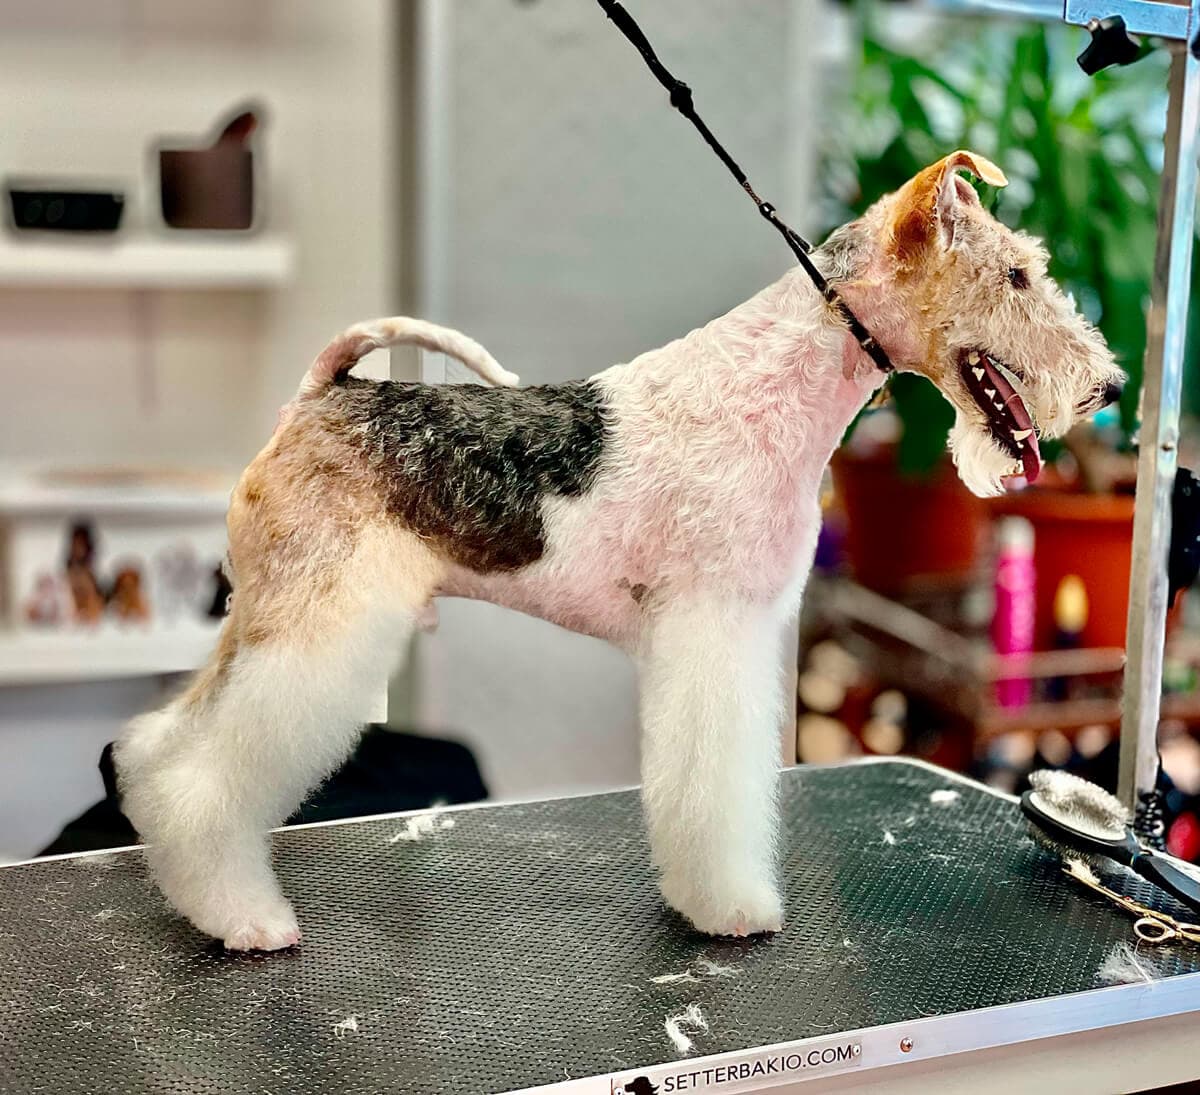 Necesitas más información sobre nuestros cursos de peluquería canina